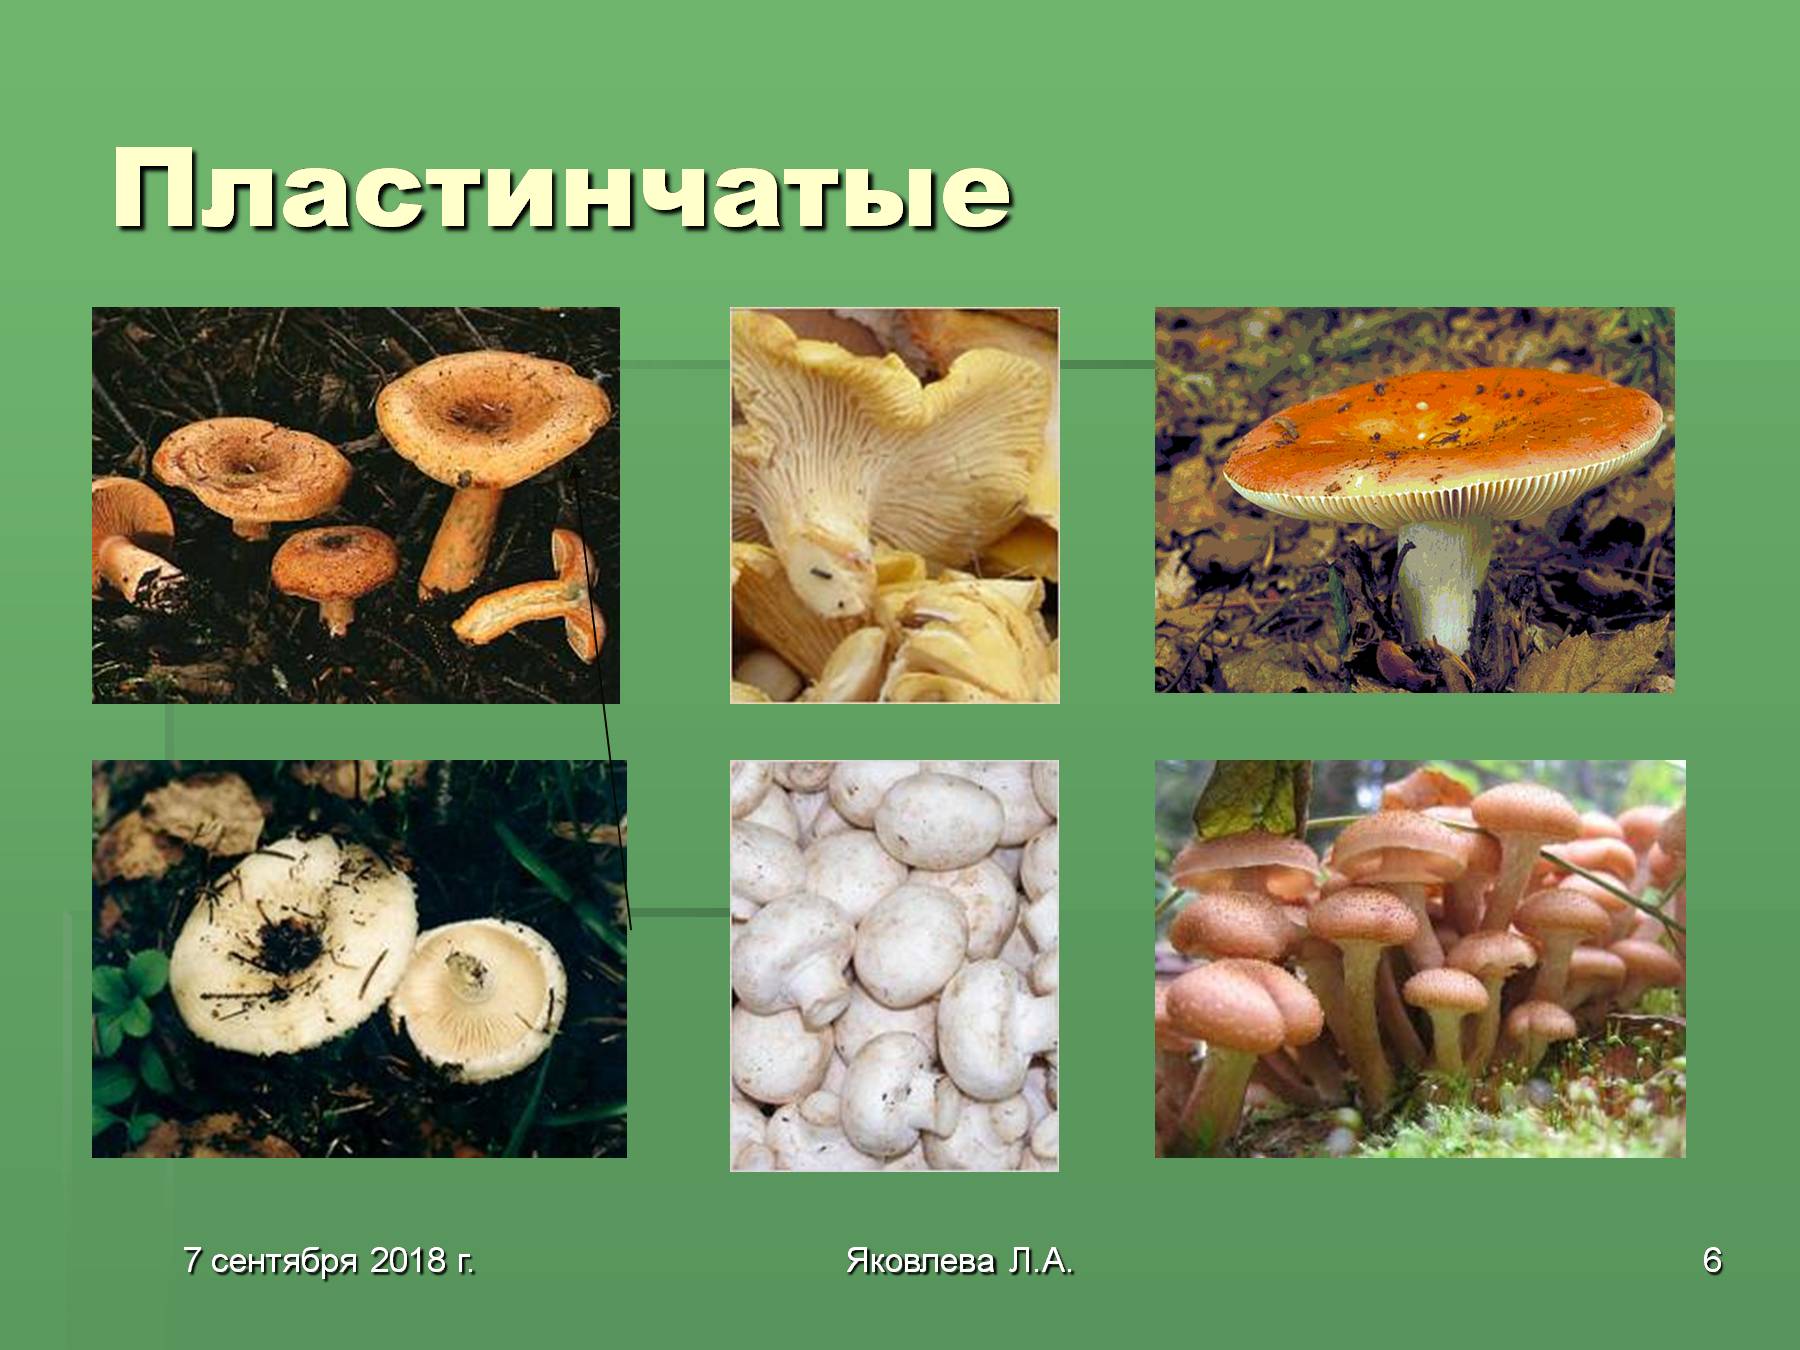 Несъедобные грибы трубчатые и пластинчатые